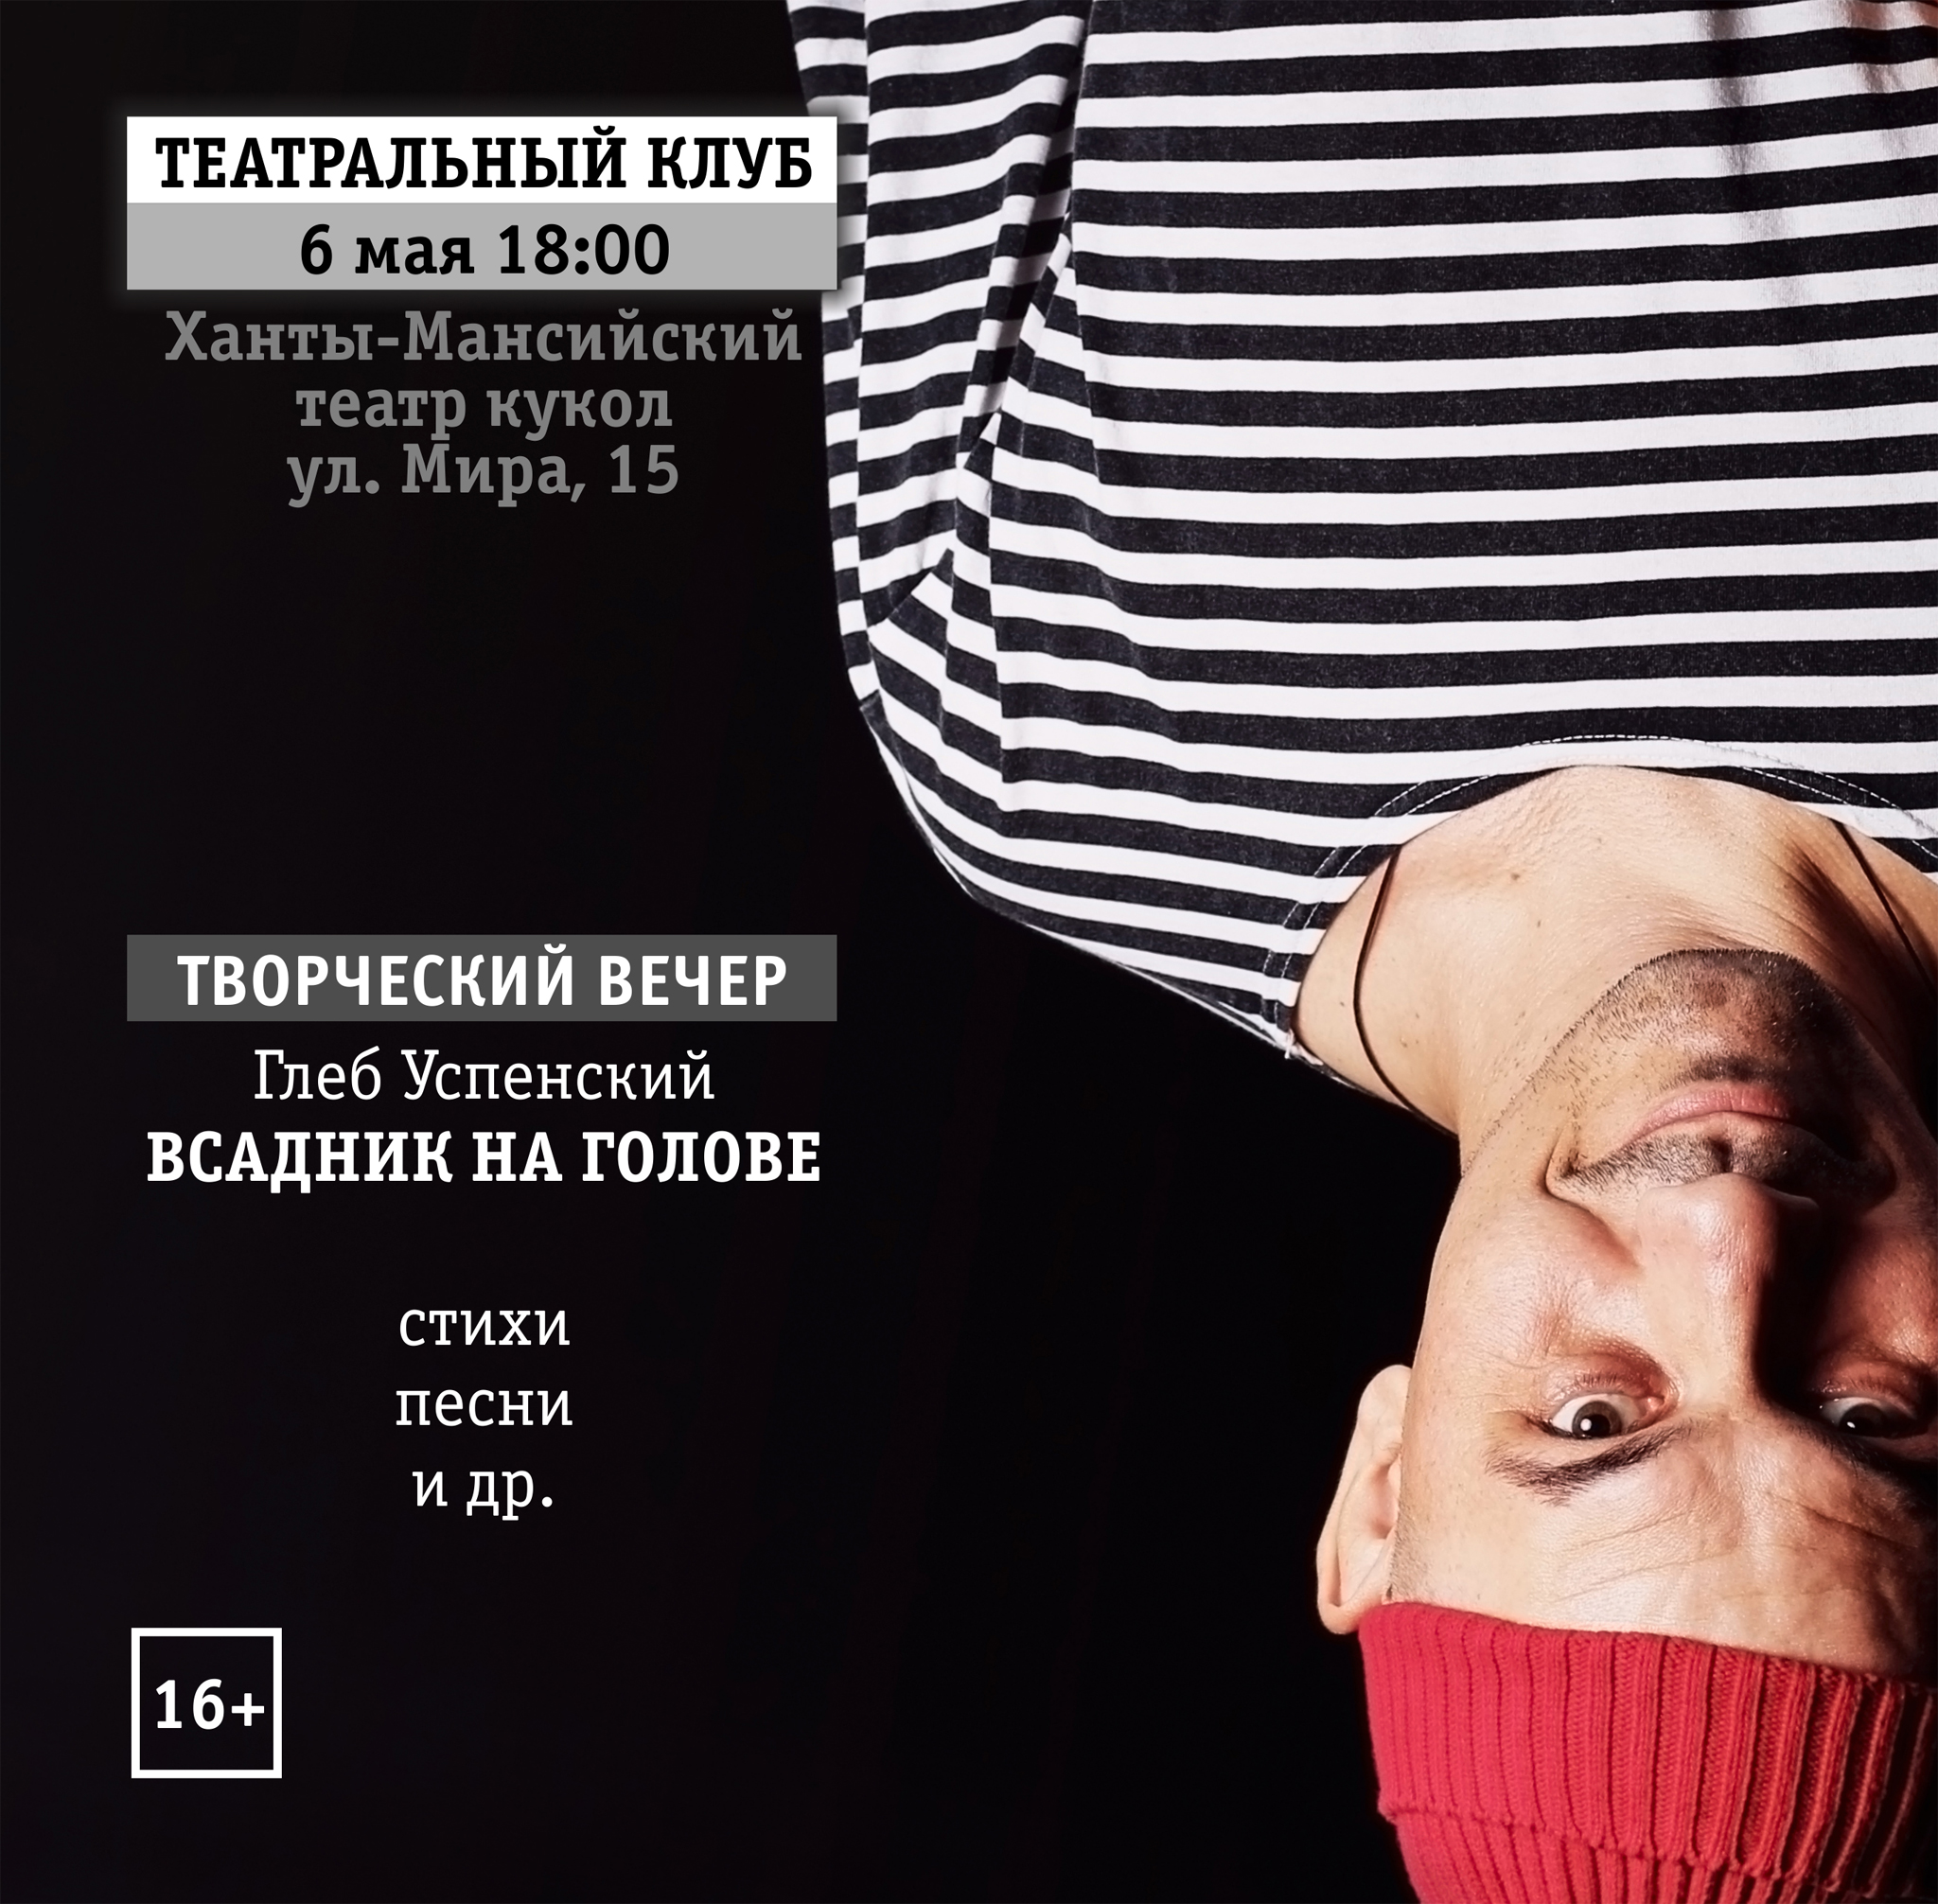 Творческий вечер Глеба Успенского состоится в Театральном клубе Ханты-Мансийска 